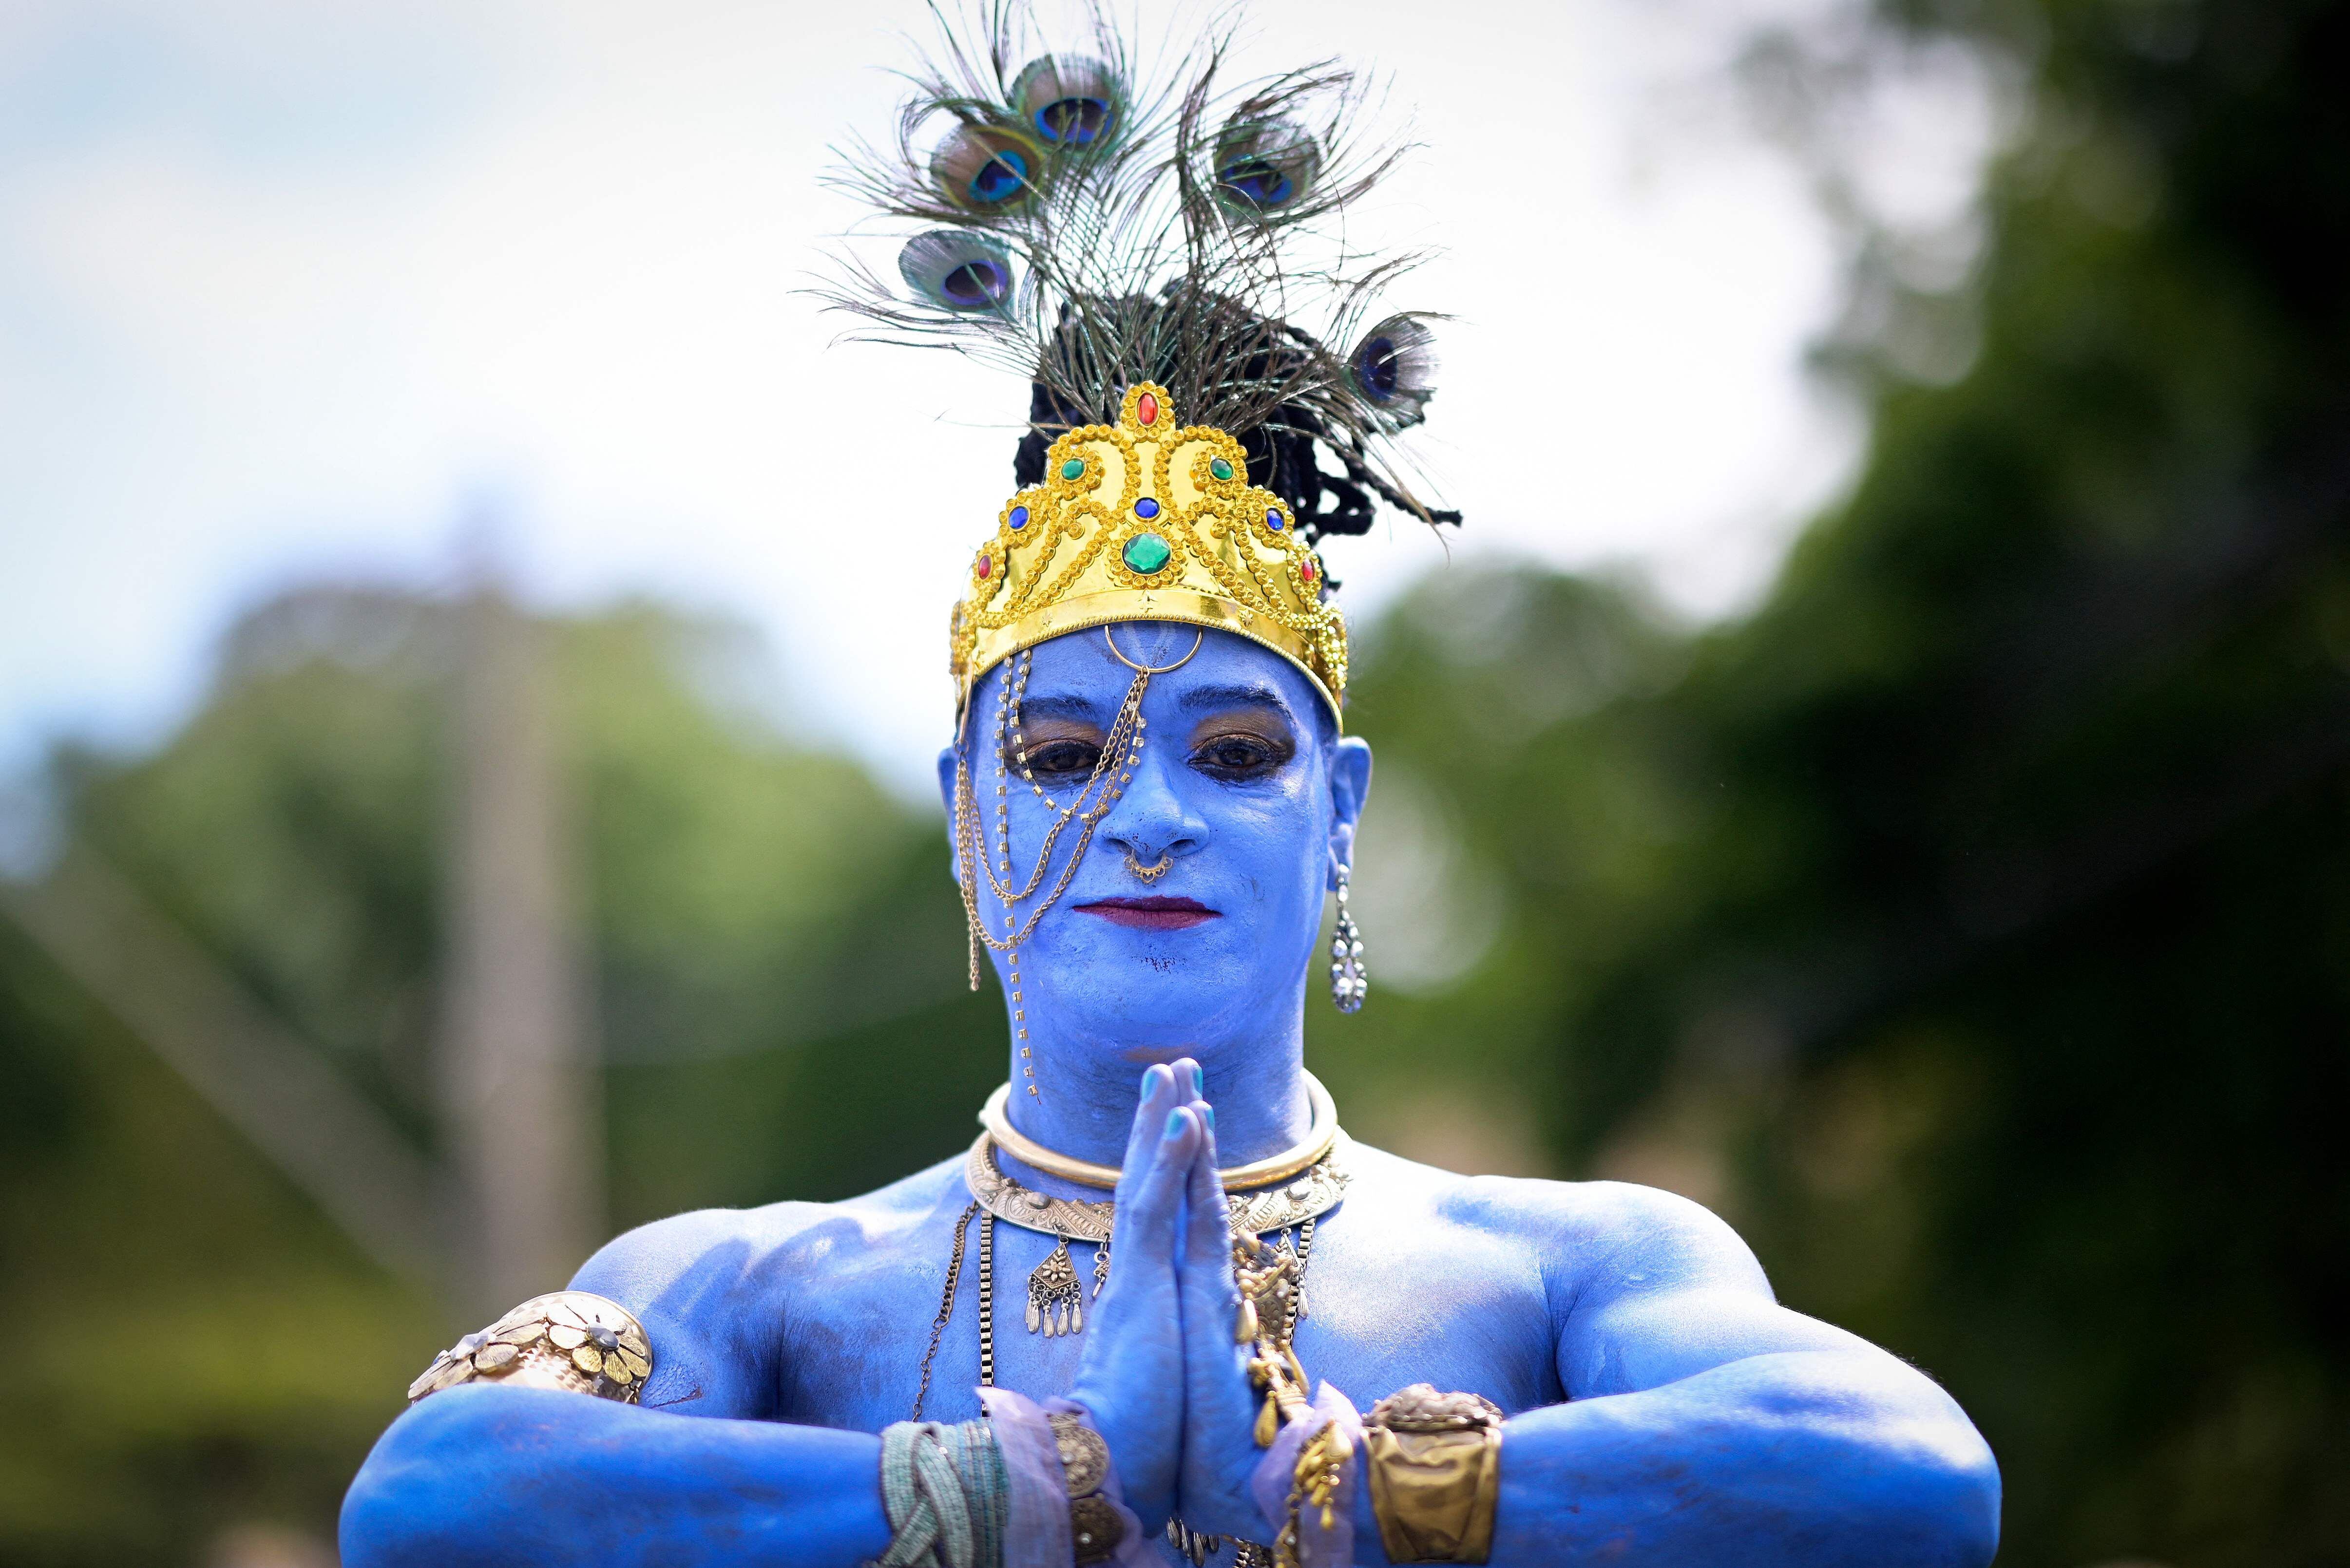 Un miembro del grupo de carnaval tradicional Pena de Pavao de Krishna, que celebra las deidades indias, se presenta en Belo Horizonte, Brasil, el 19 de febrero de 2023.